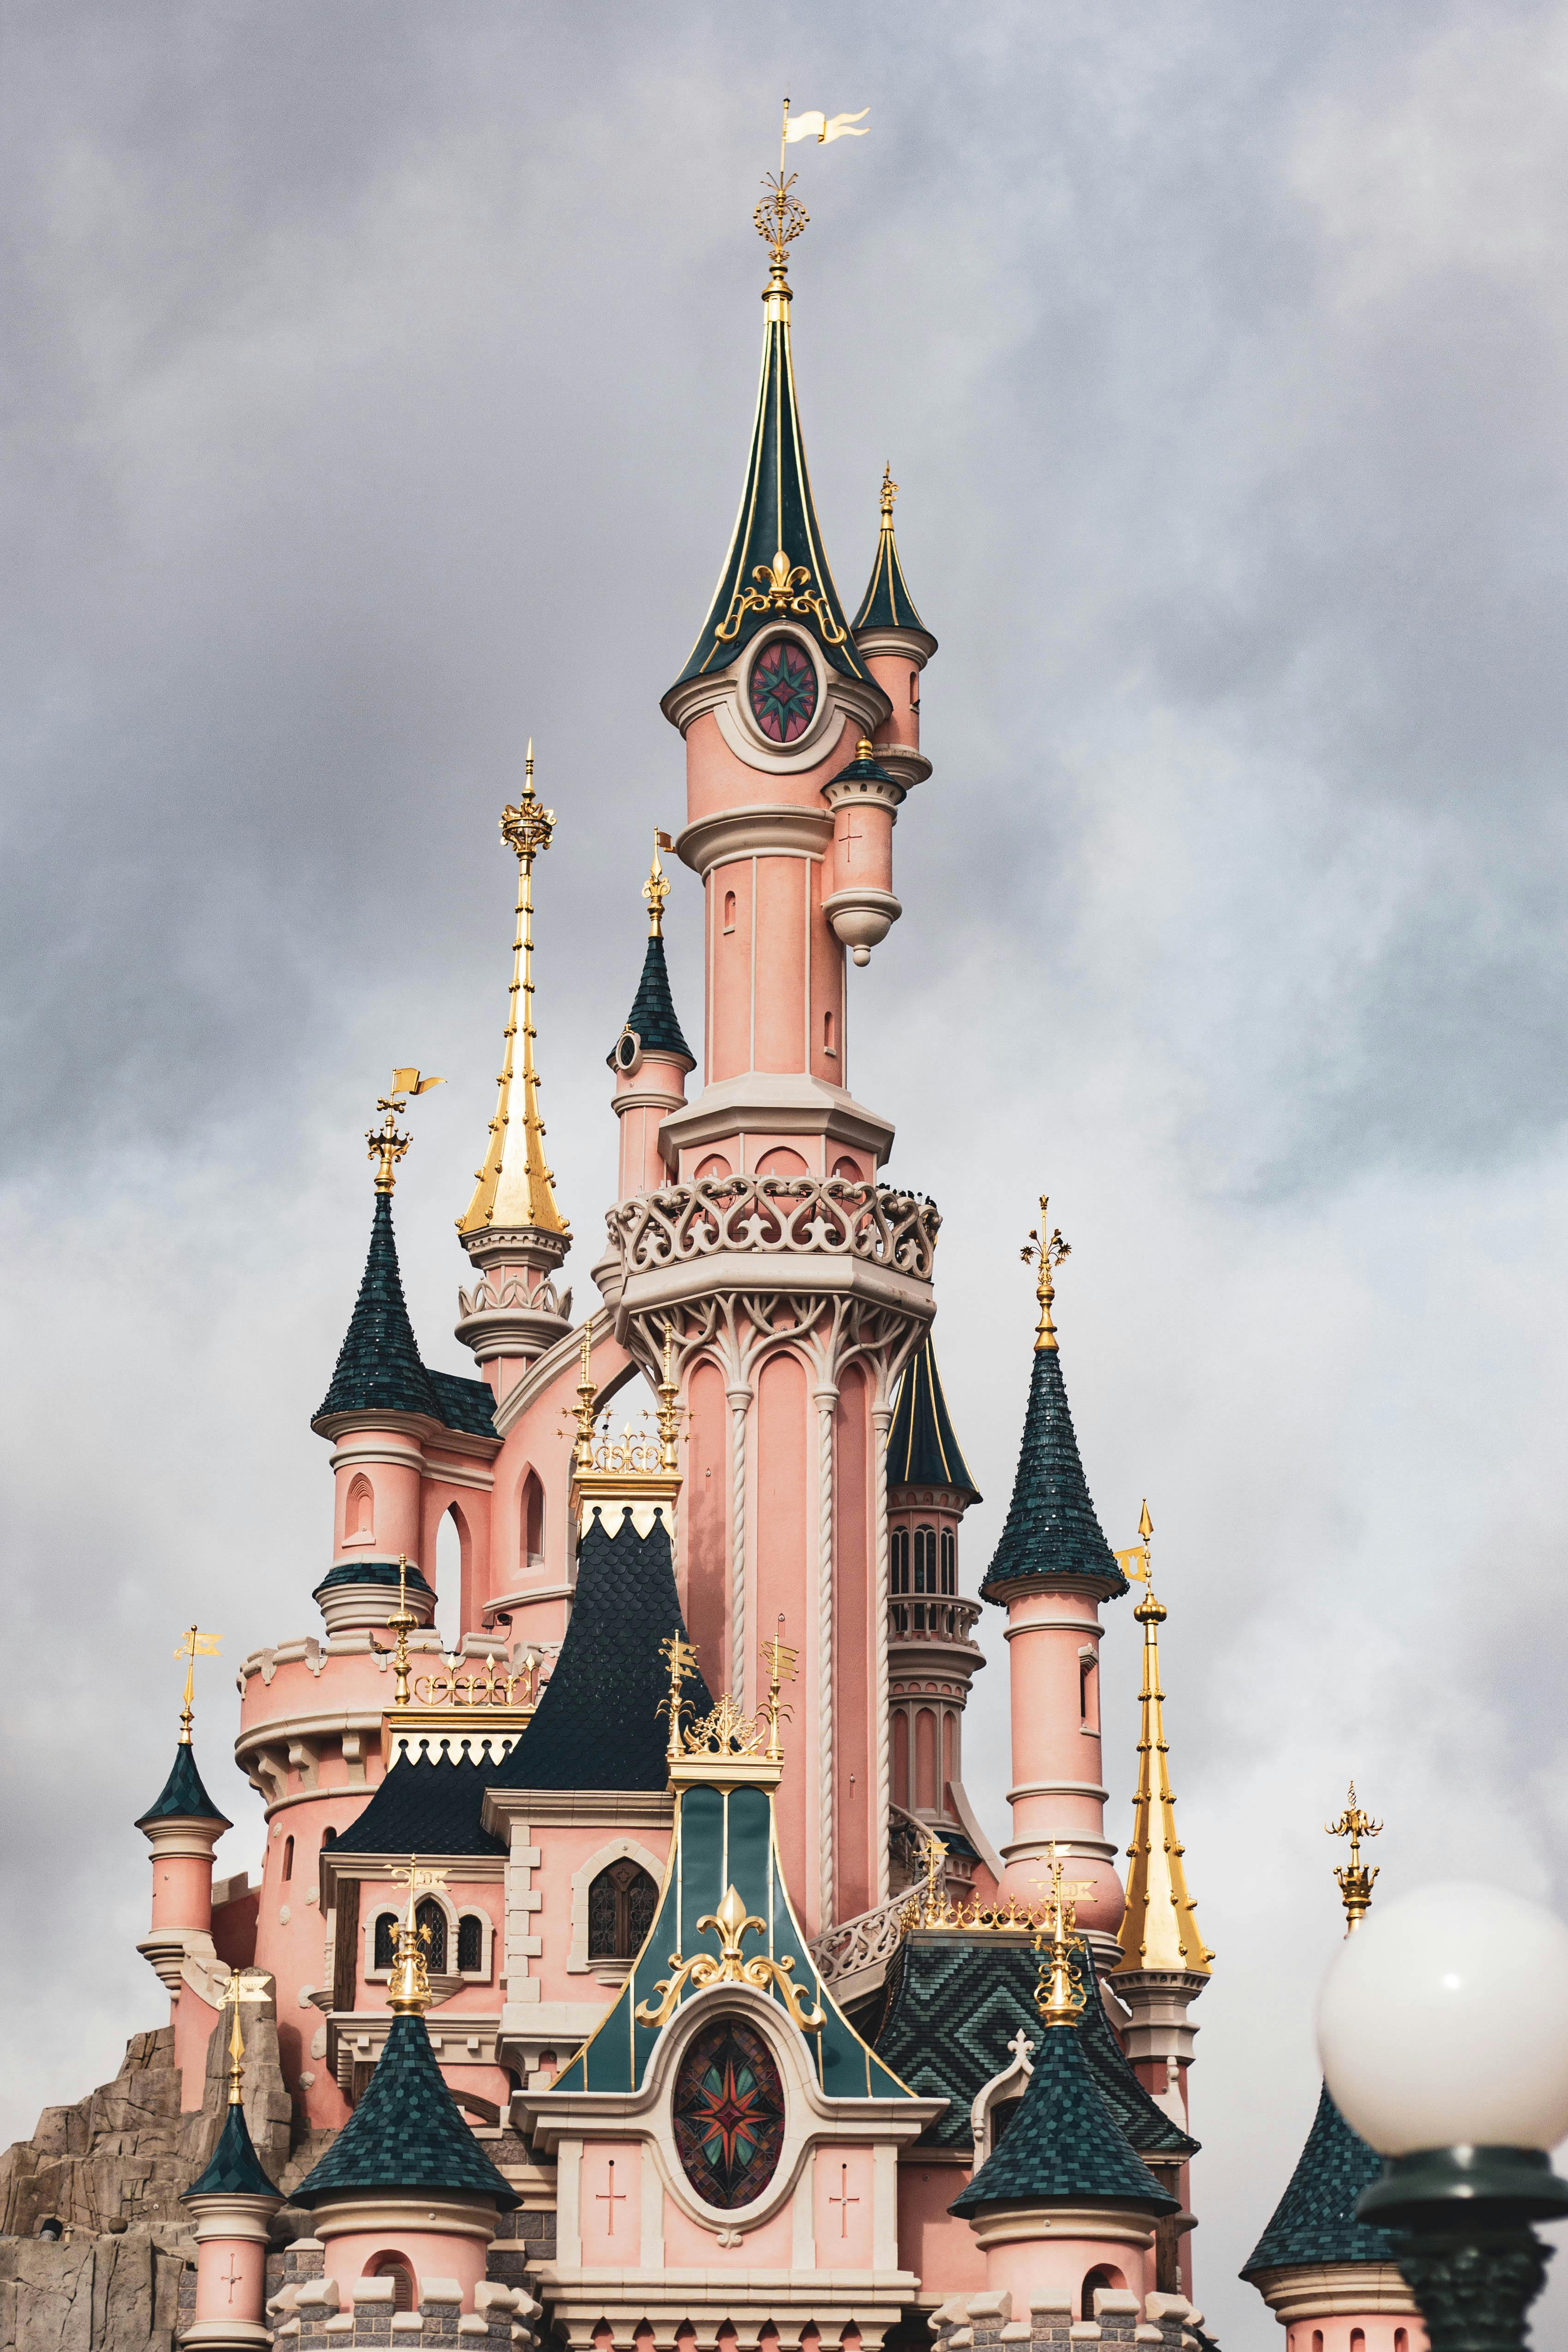 Disney castle 1080P 2K 4K 5K HD wallpapers free download  Wallpaper  Flare